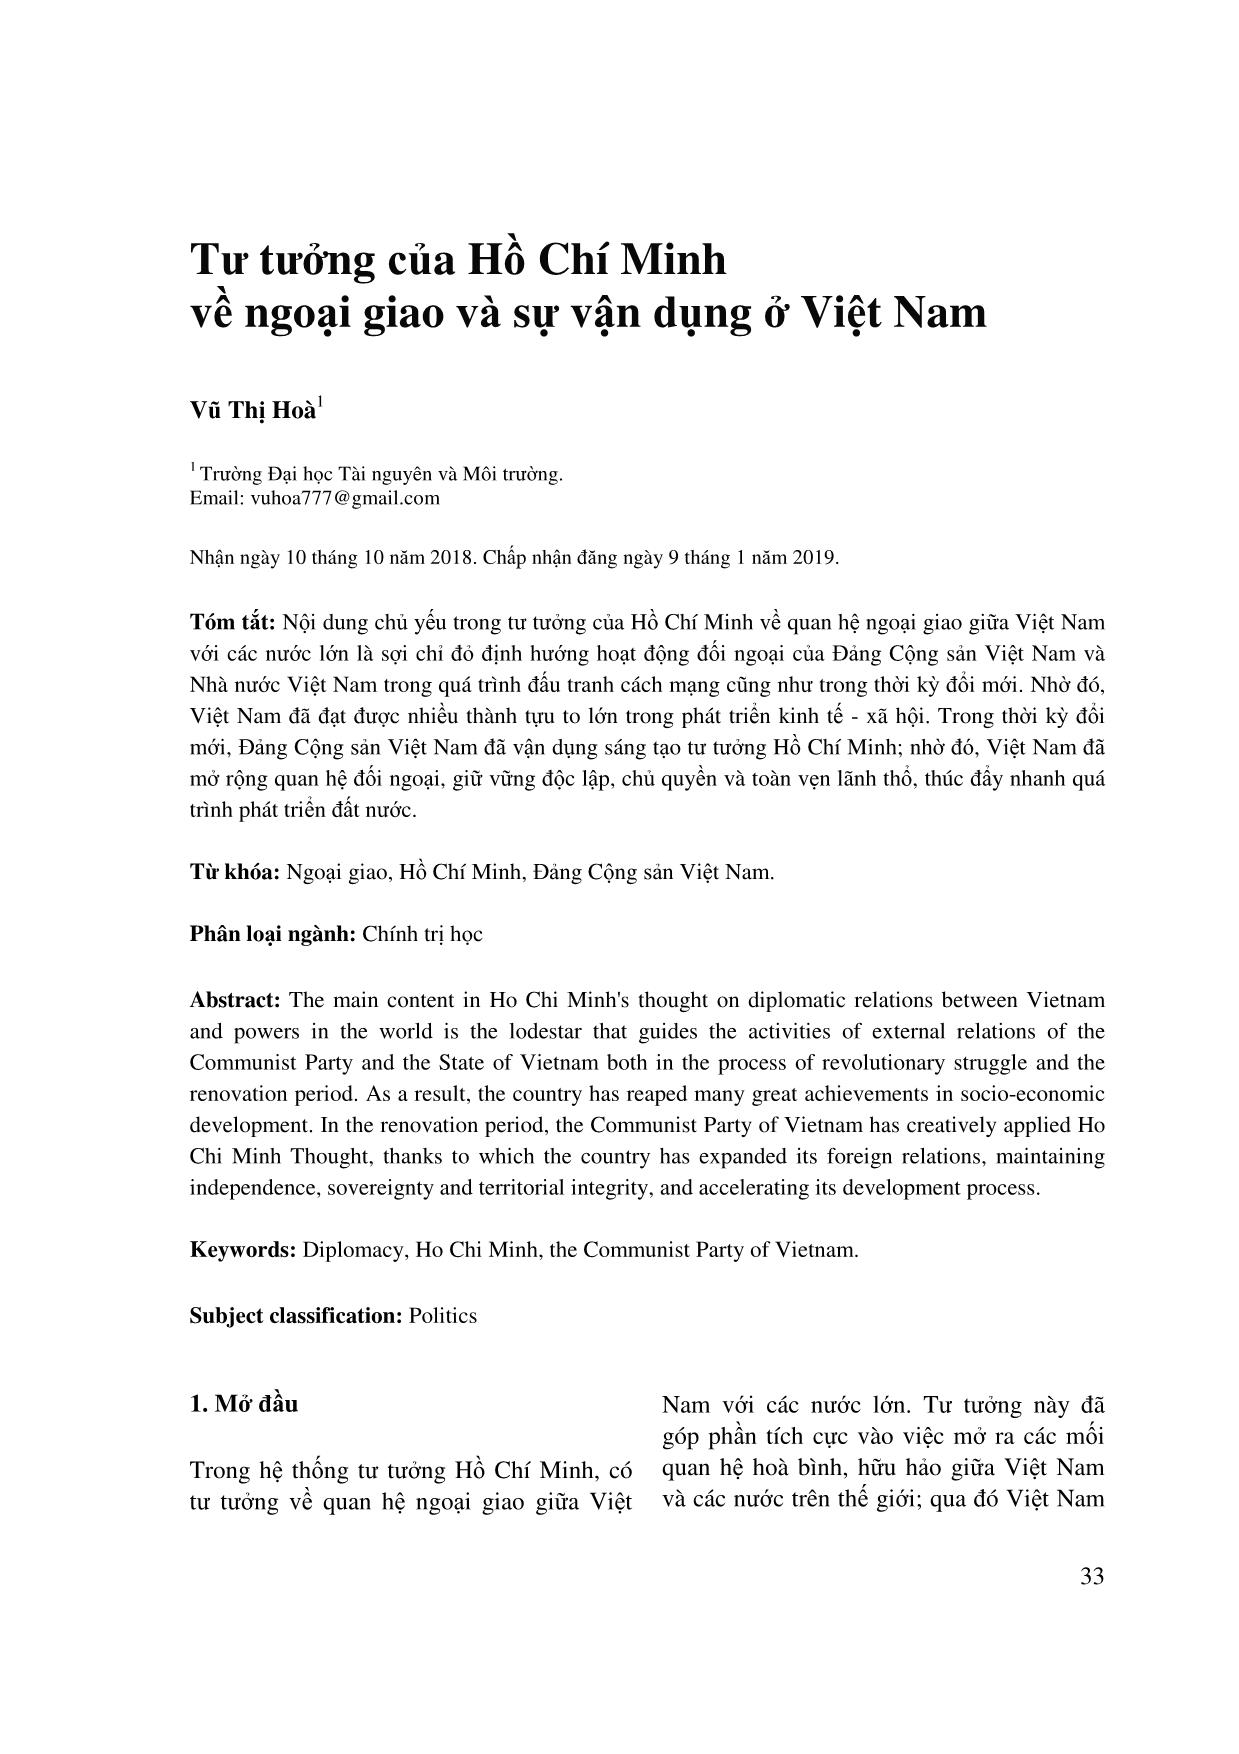 Tư tưởng của Hồ Chí Minh về ngoại giao và sự vận dụng ở Việt Nam trang 1